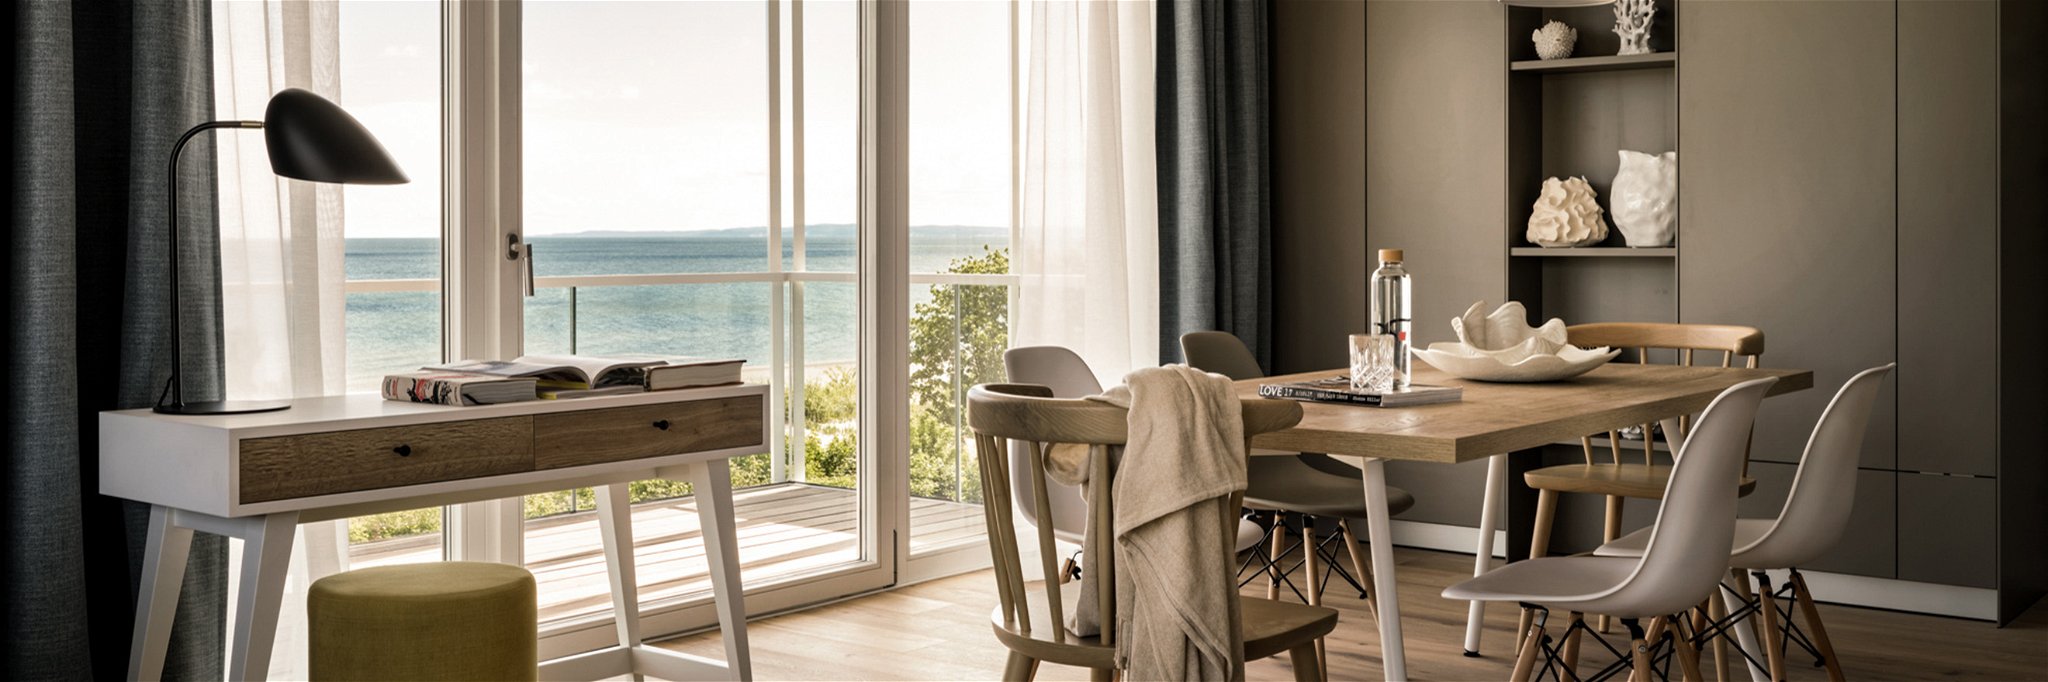 127 neue Apartments mit Blick auf die Ostsee bieten die neuen »the breeze« Apartments auf Usedom.